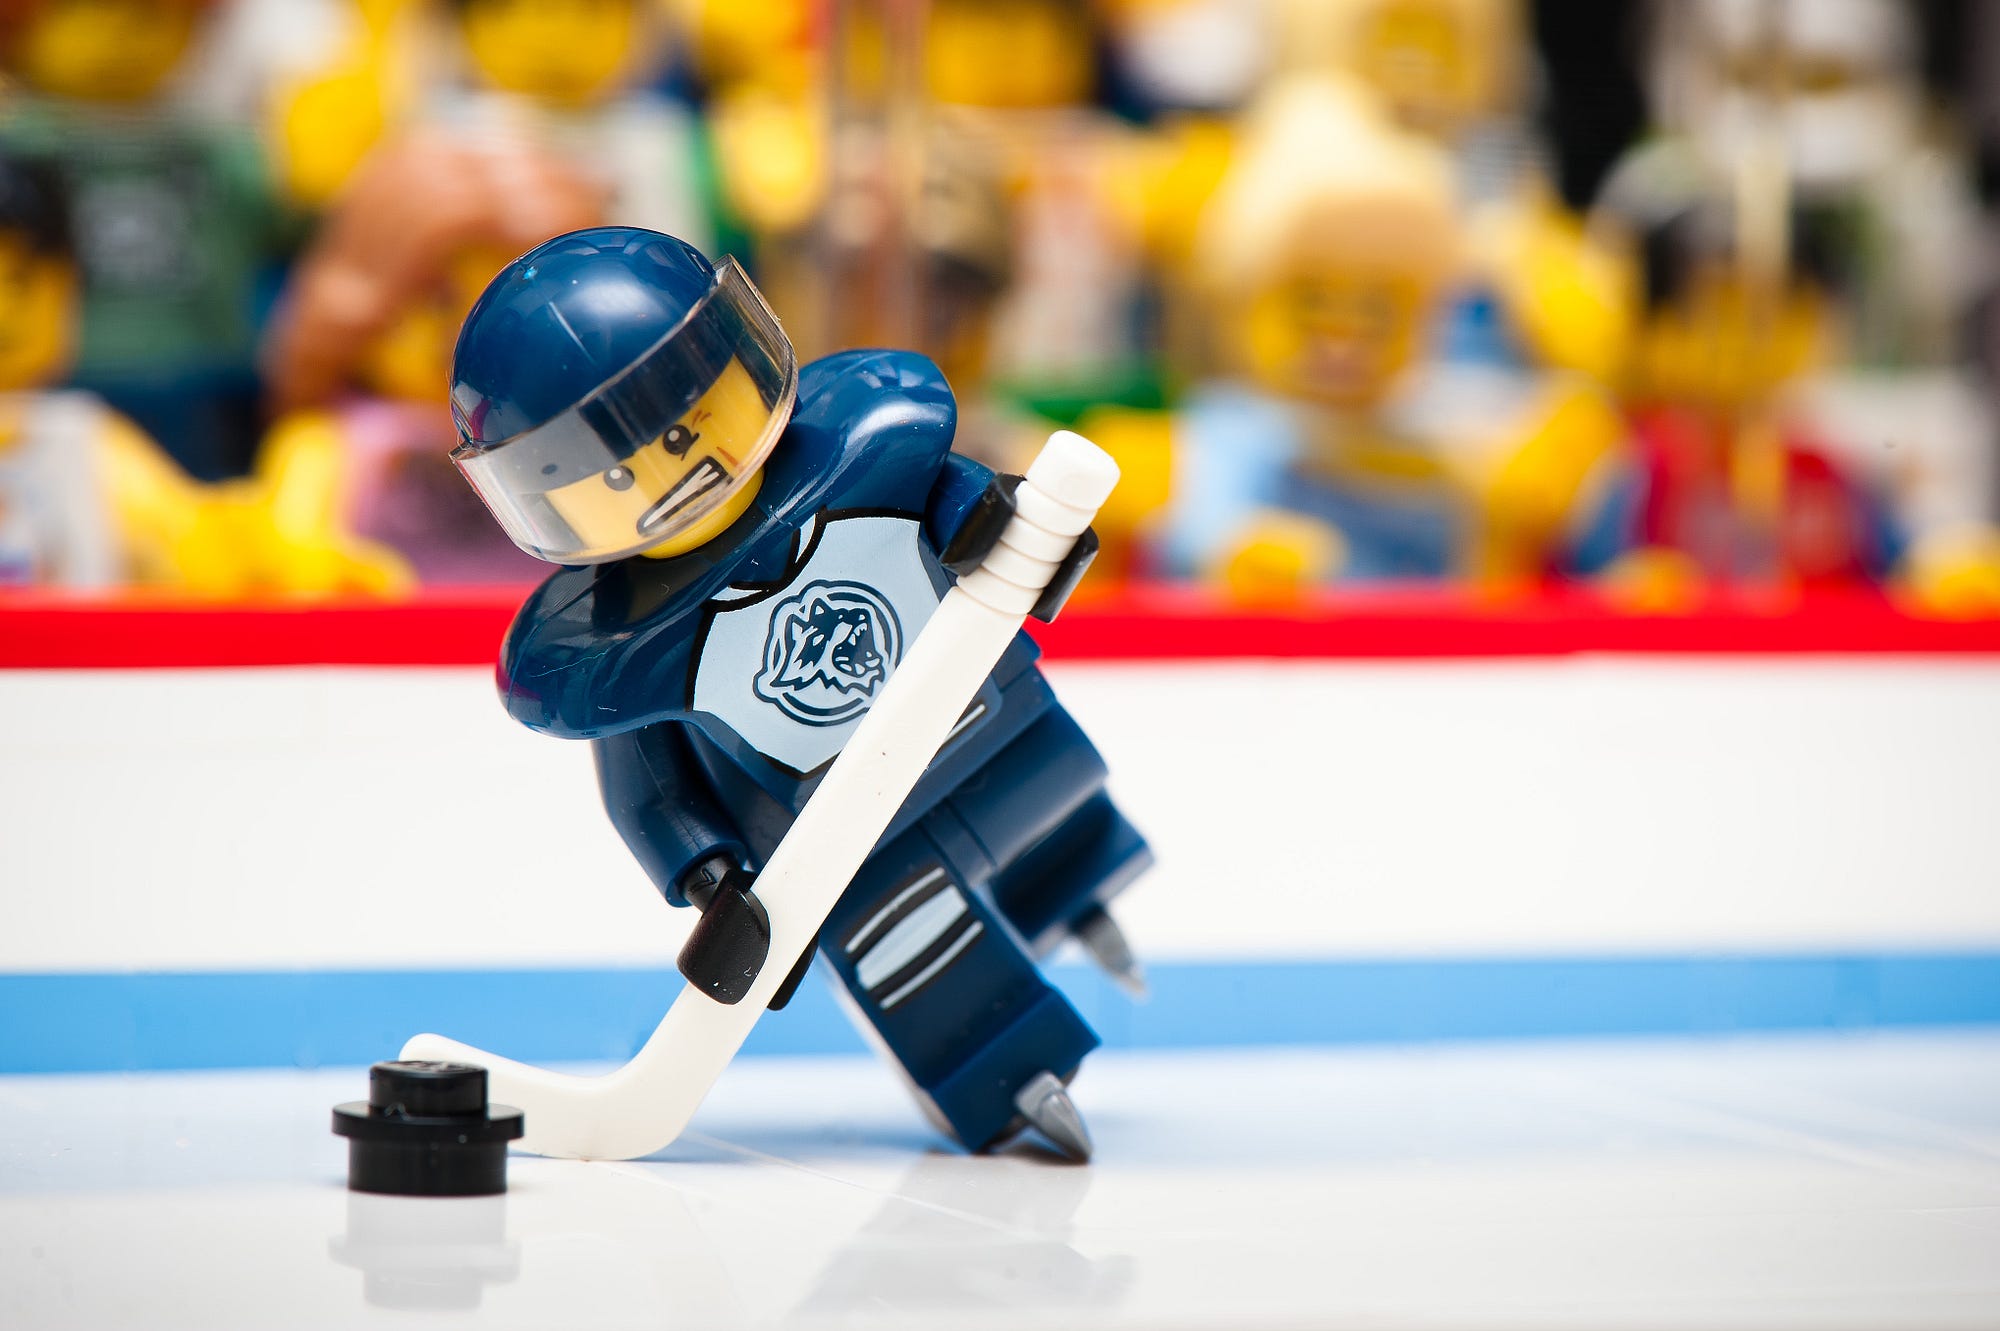 Le hockey sur glace, ce n'est pas ce que vous croyez | by Michel Beck |  Medium